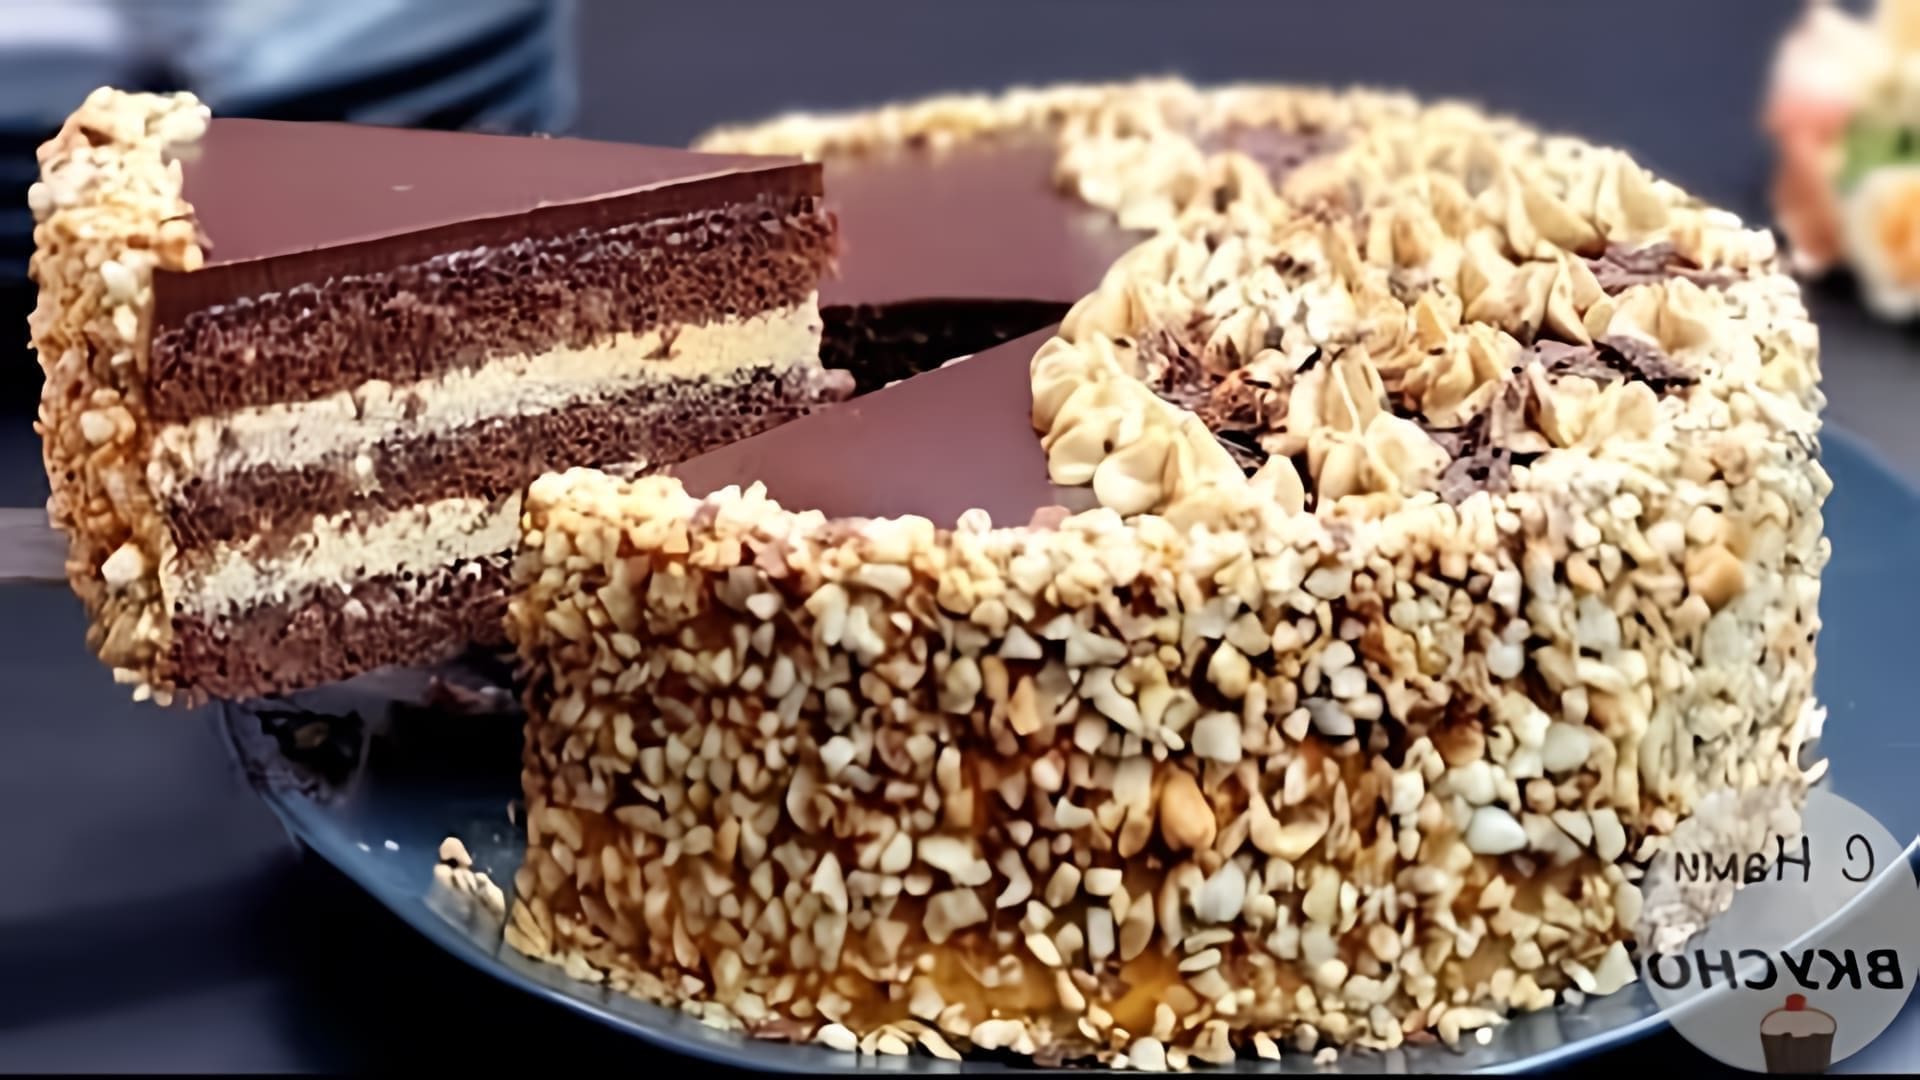 В этом видео демонстрируется рецепт приготовления вкусного шоколадного торта с орехами